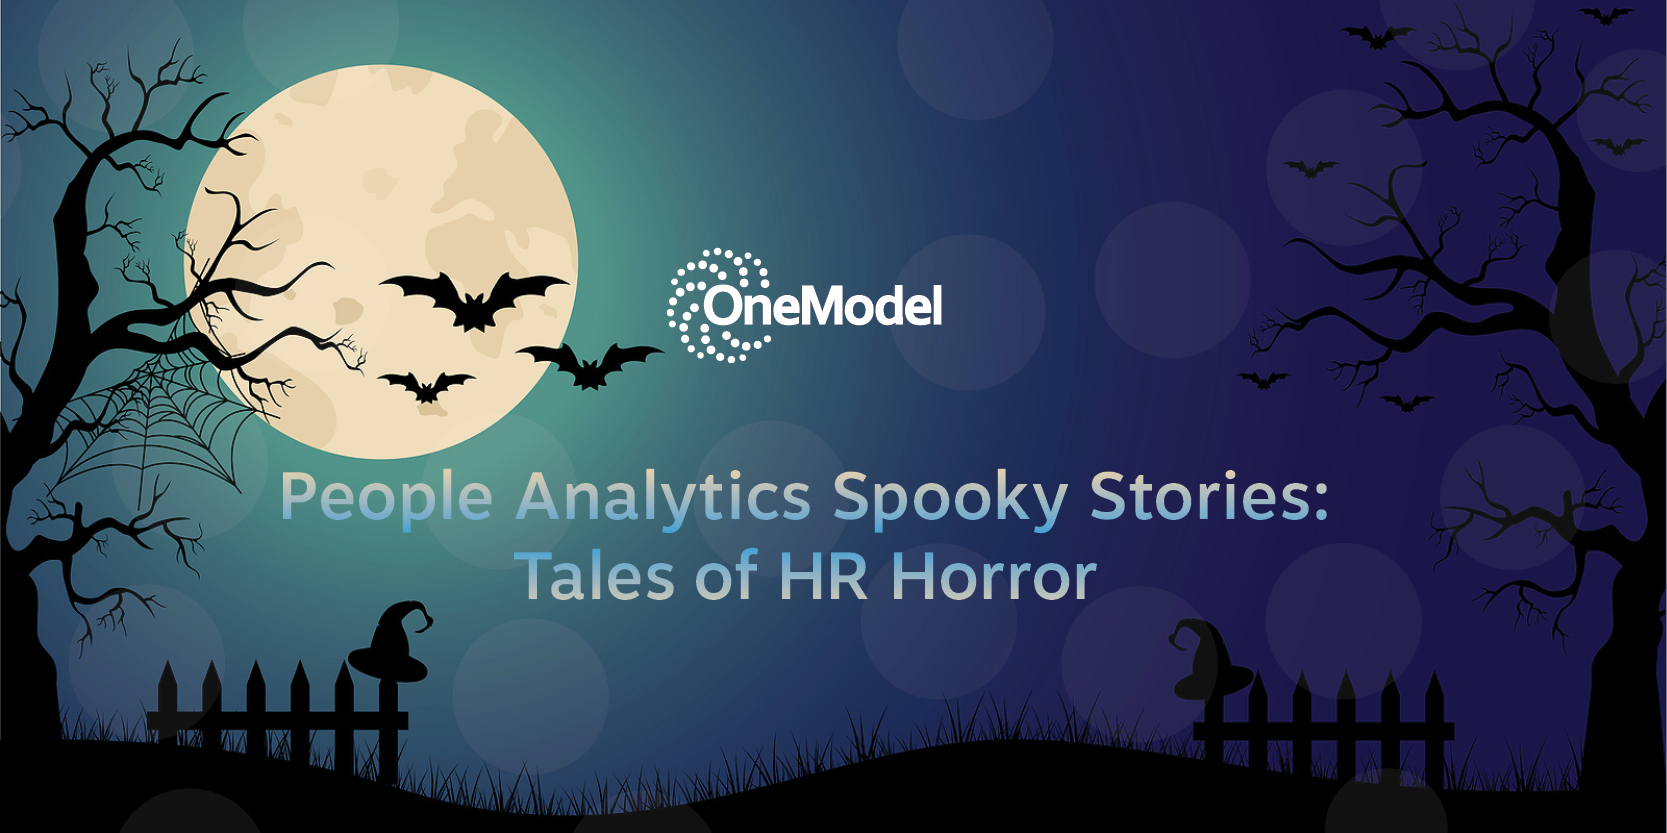 OneModel_-_HR-Horror_Stories_Graphic_800x400_v2